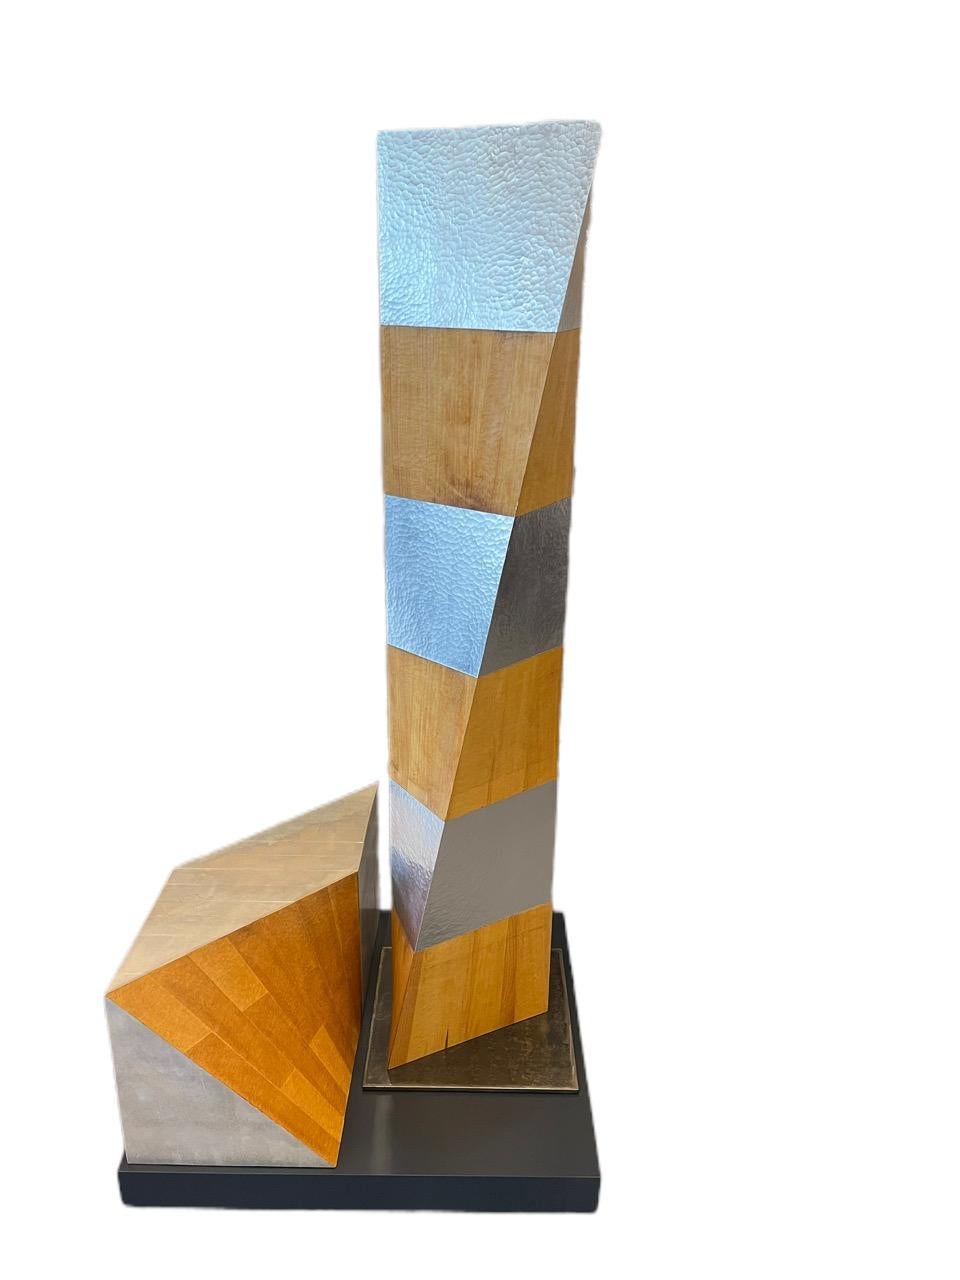 Kevin O'Toole, Zweiteilige Skulptur „Toole“, 20. Jahrhundert (amerikanisch)